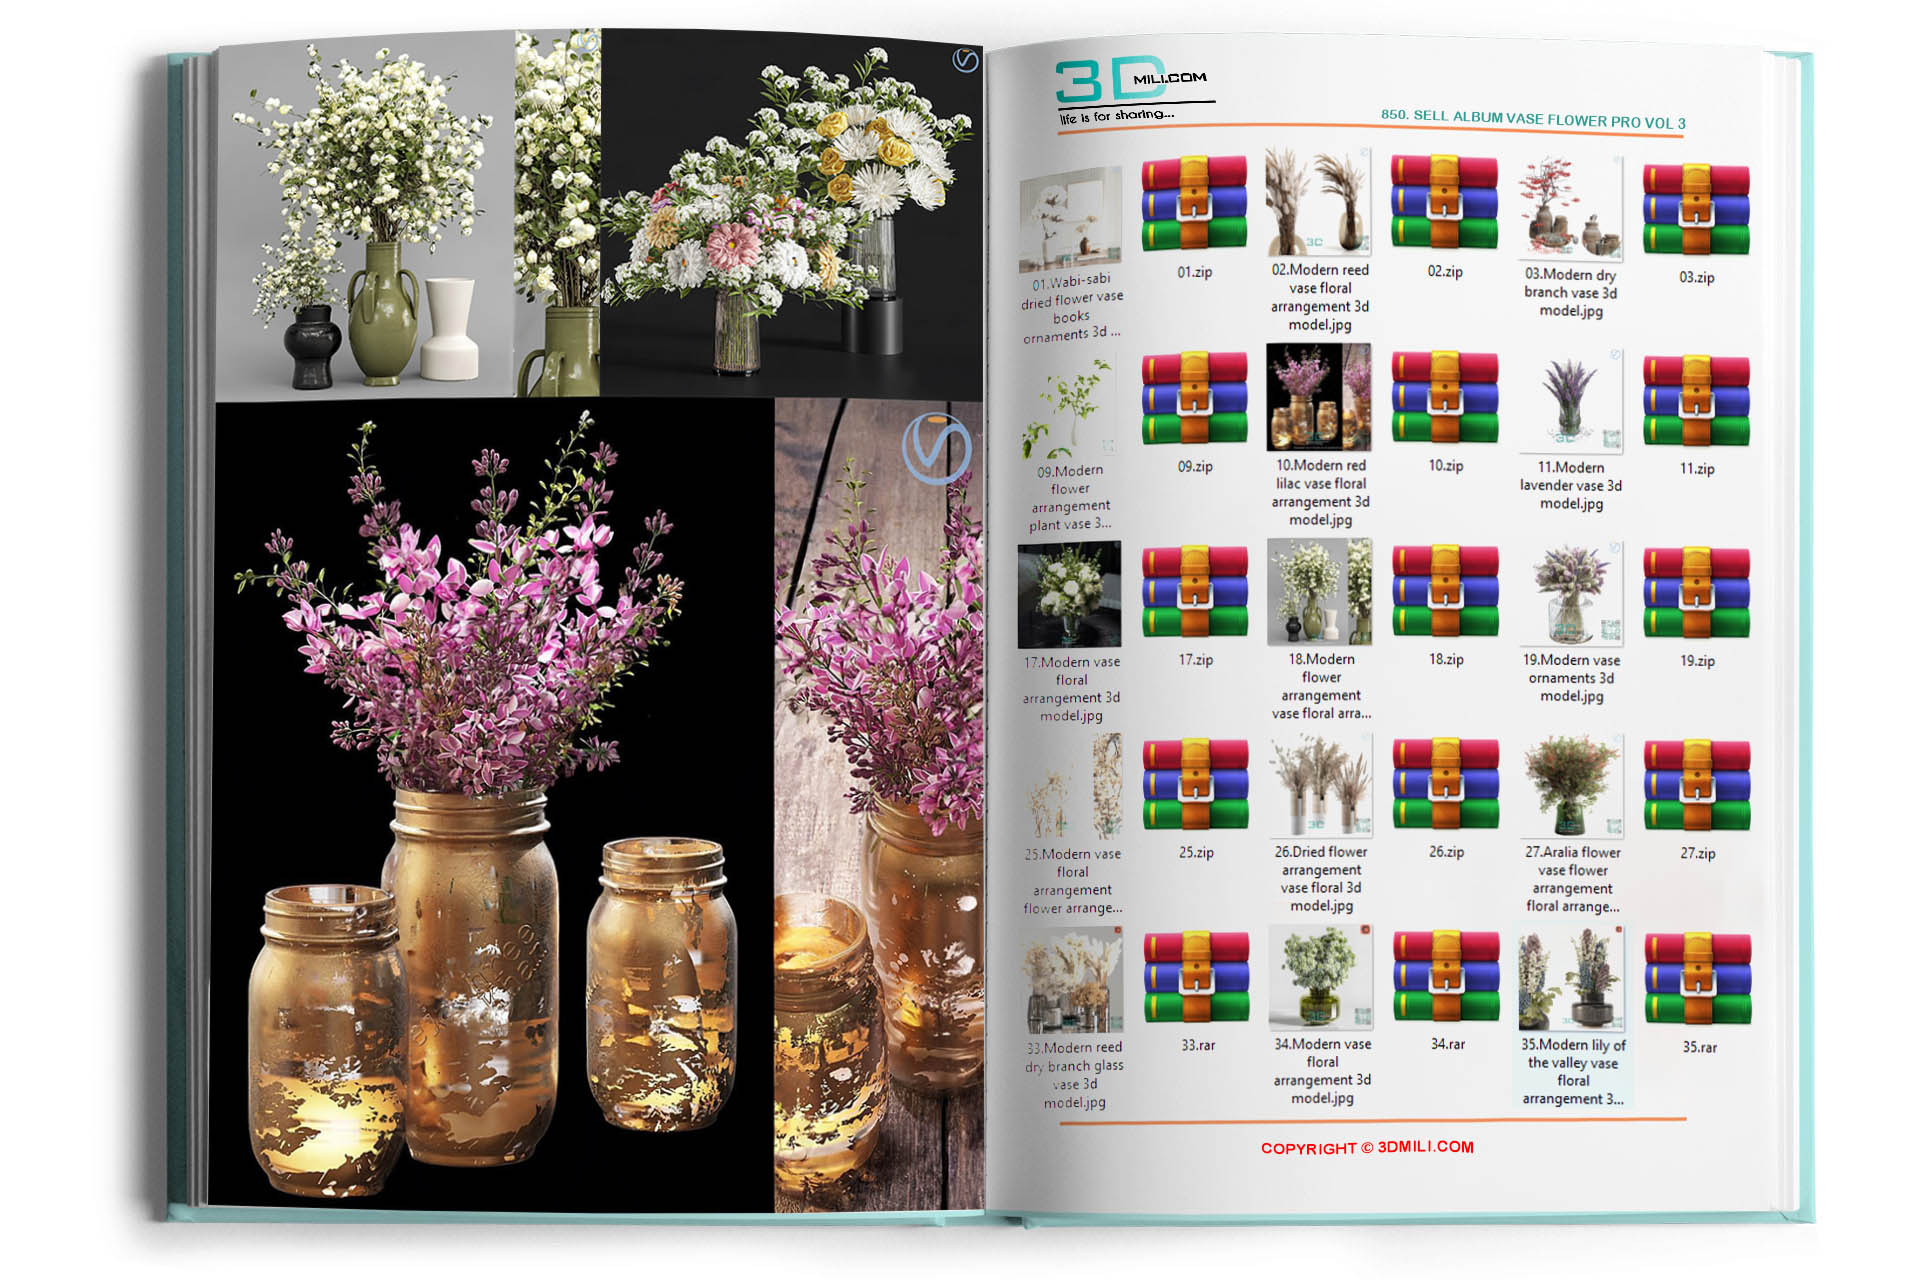 850. Sell Album Vase Flower PRO Vol 3